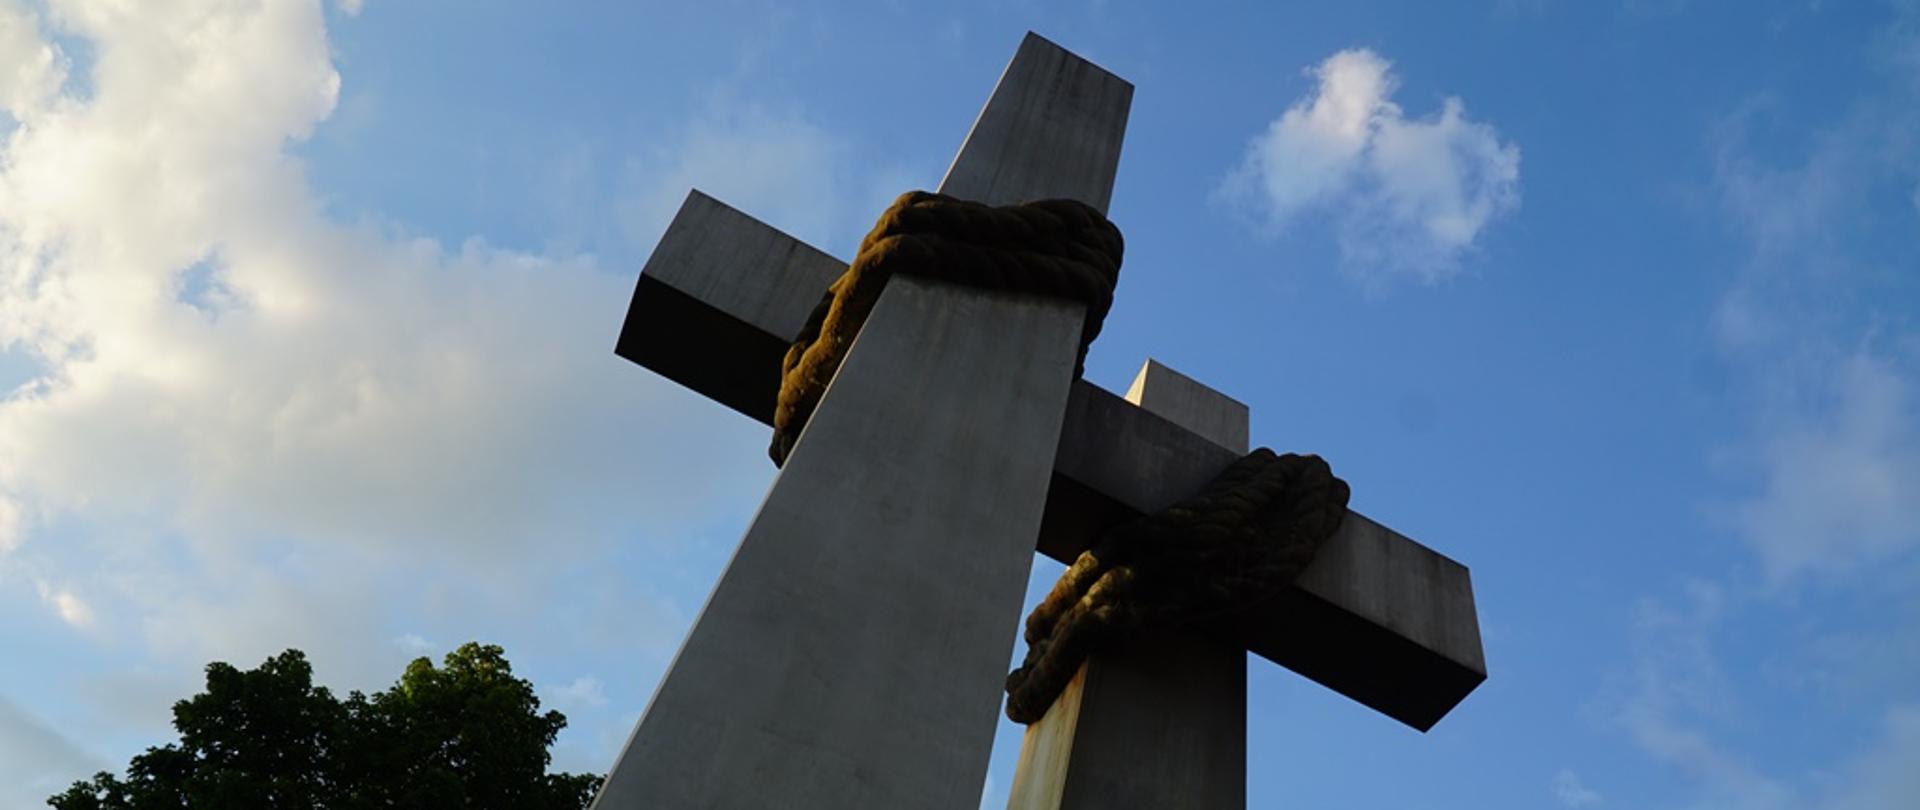 pomnik dwóch krzyży, w tle niebo